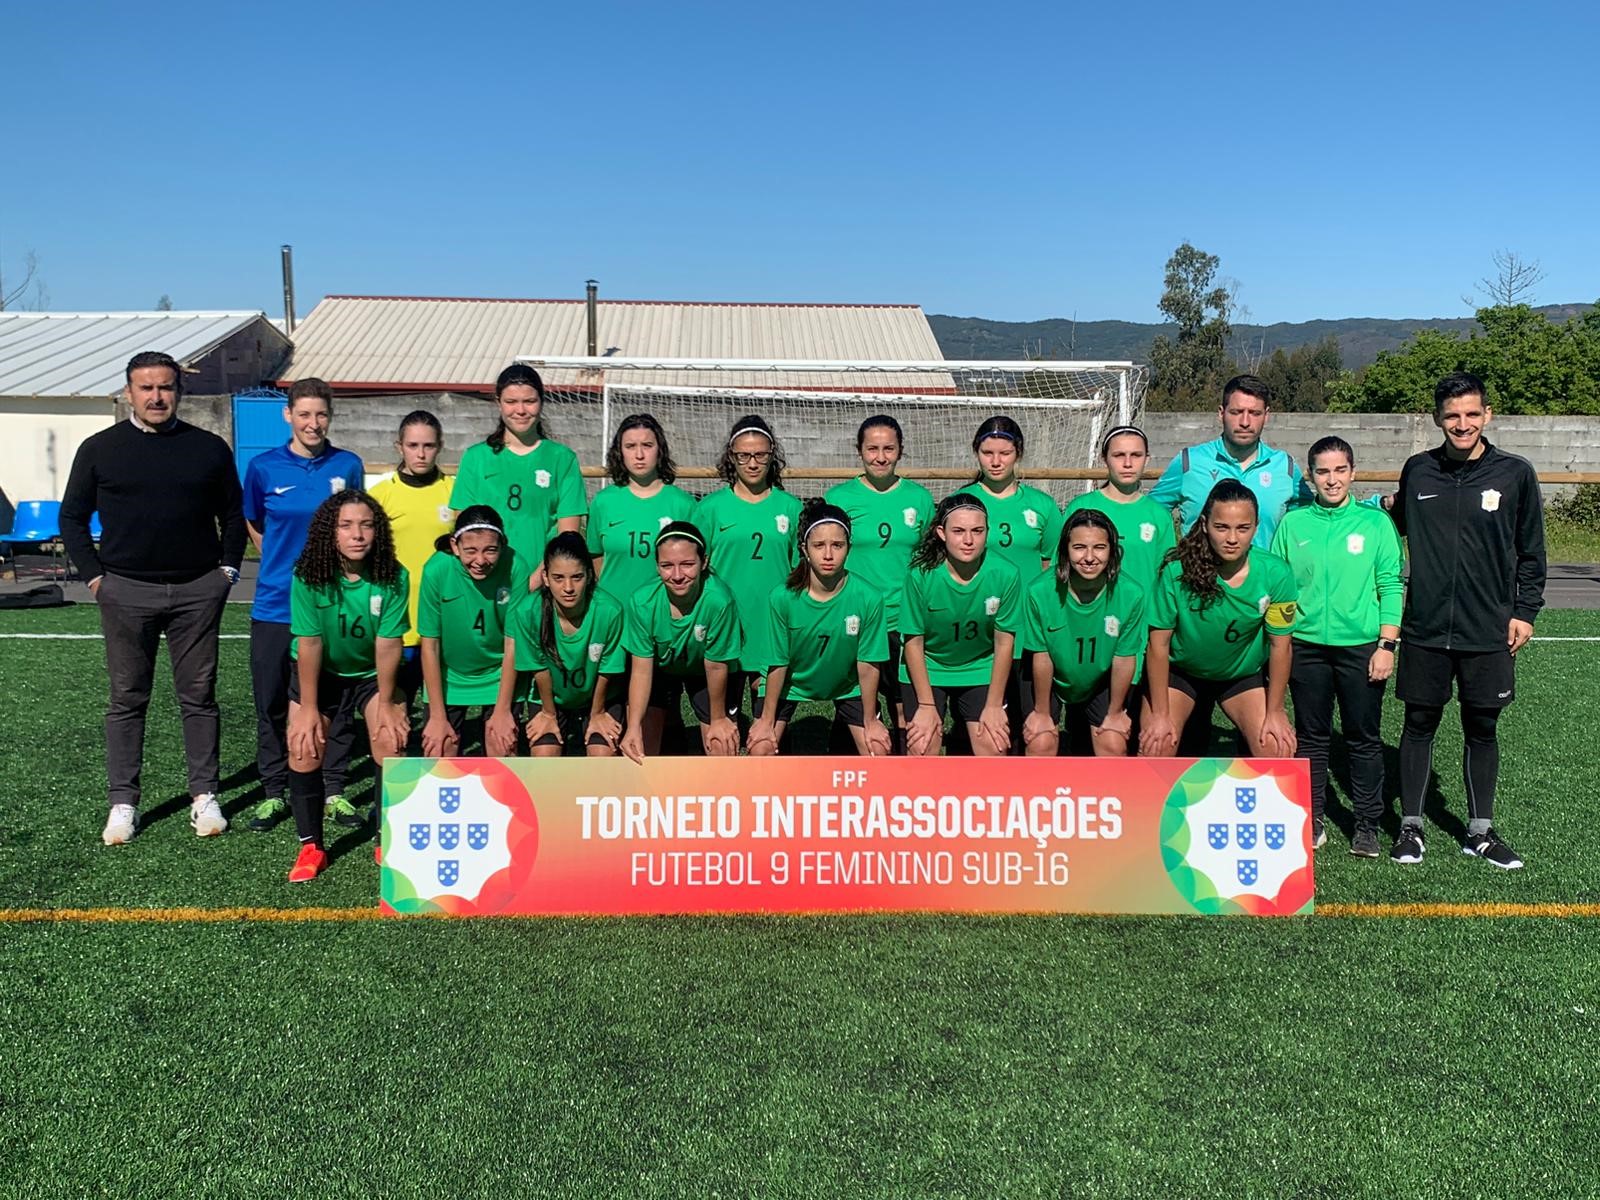 Torneio Nacional Interassociações de Sub-16 - Futebol Feminino